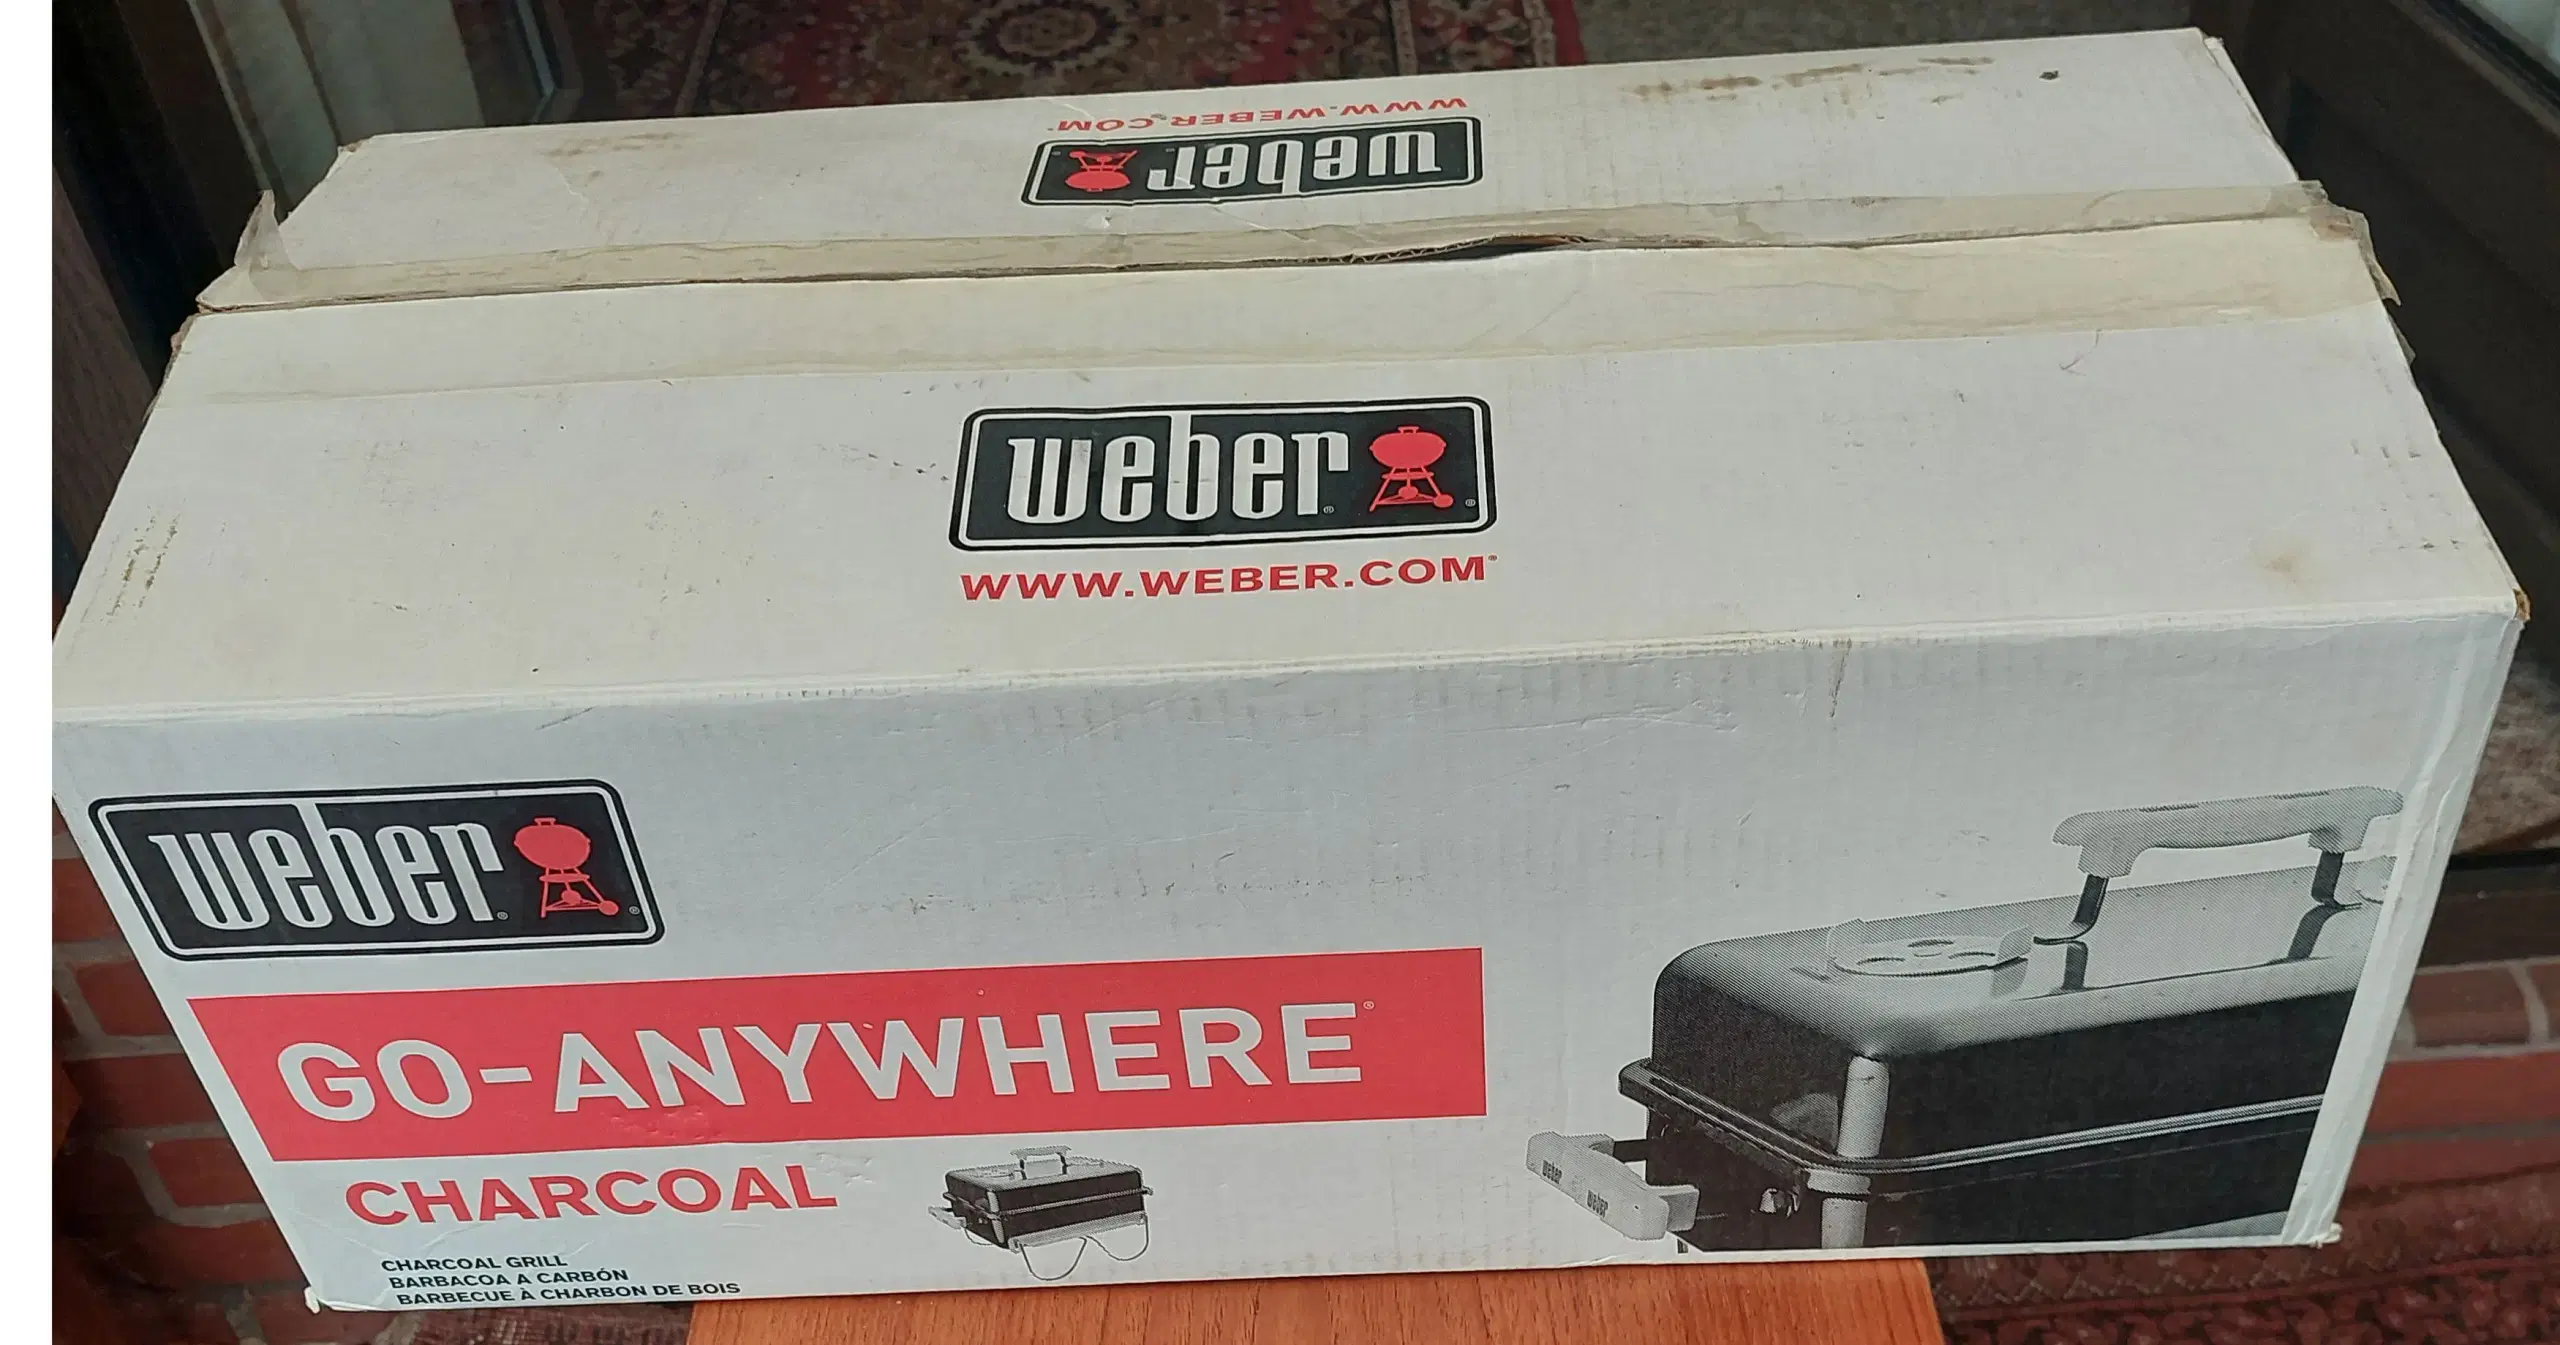 Weber trækuls grill sælges